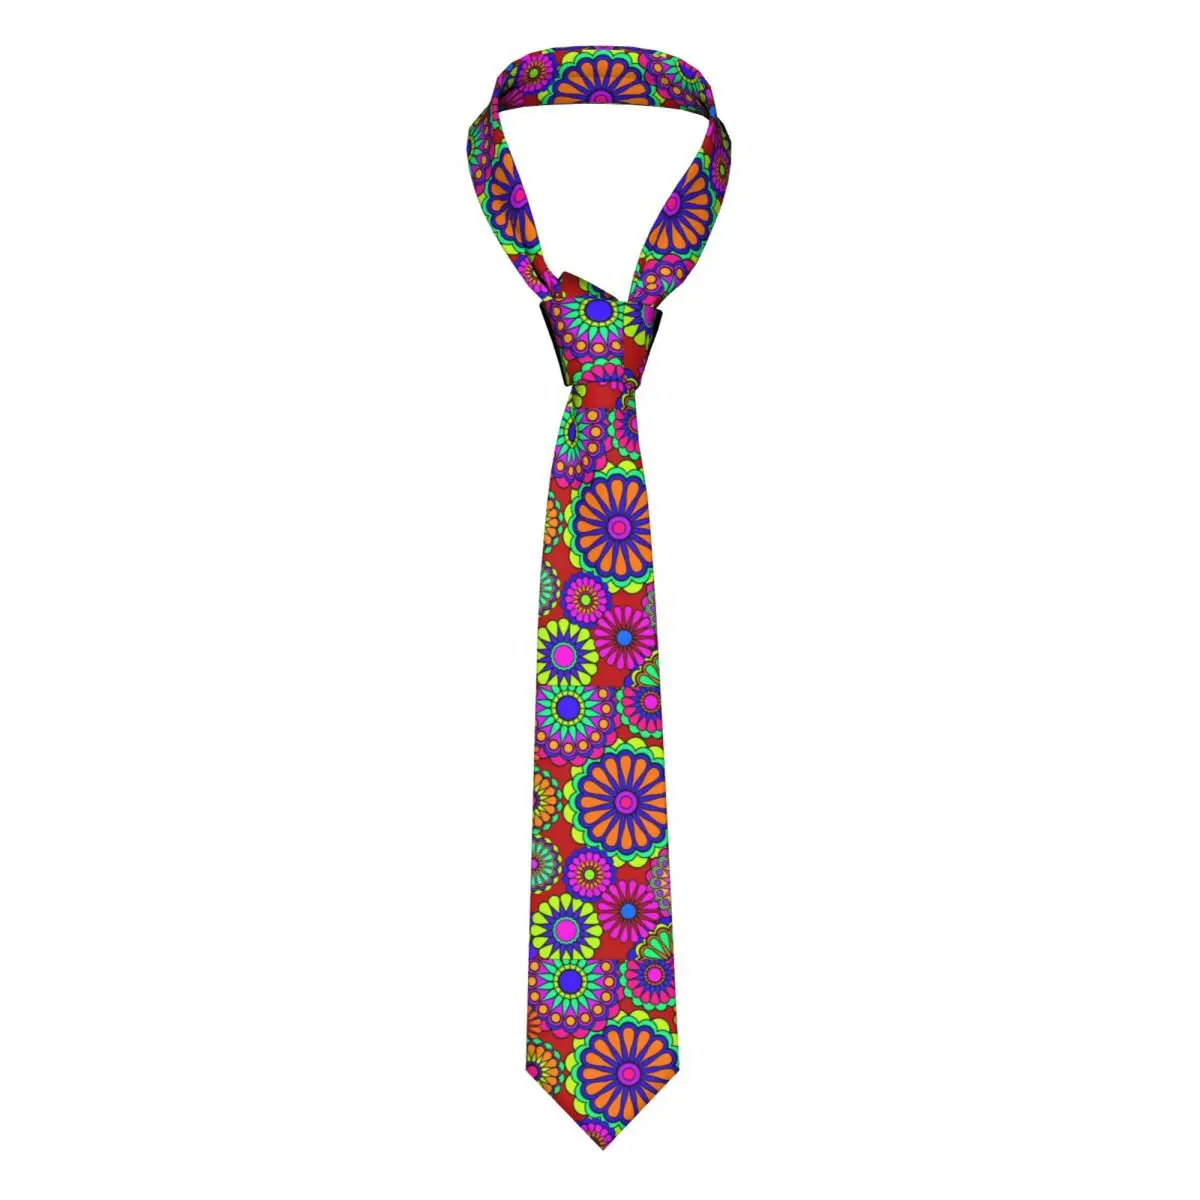 

Цветной Цветок мощный галстук Ретро стиль хиппи полиэстер шелк печатный галстук подарок формальная Мужская блузка галстук